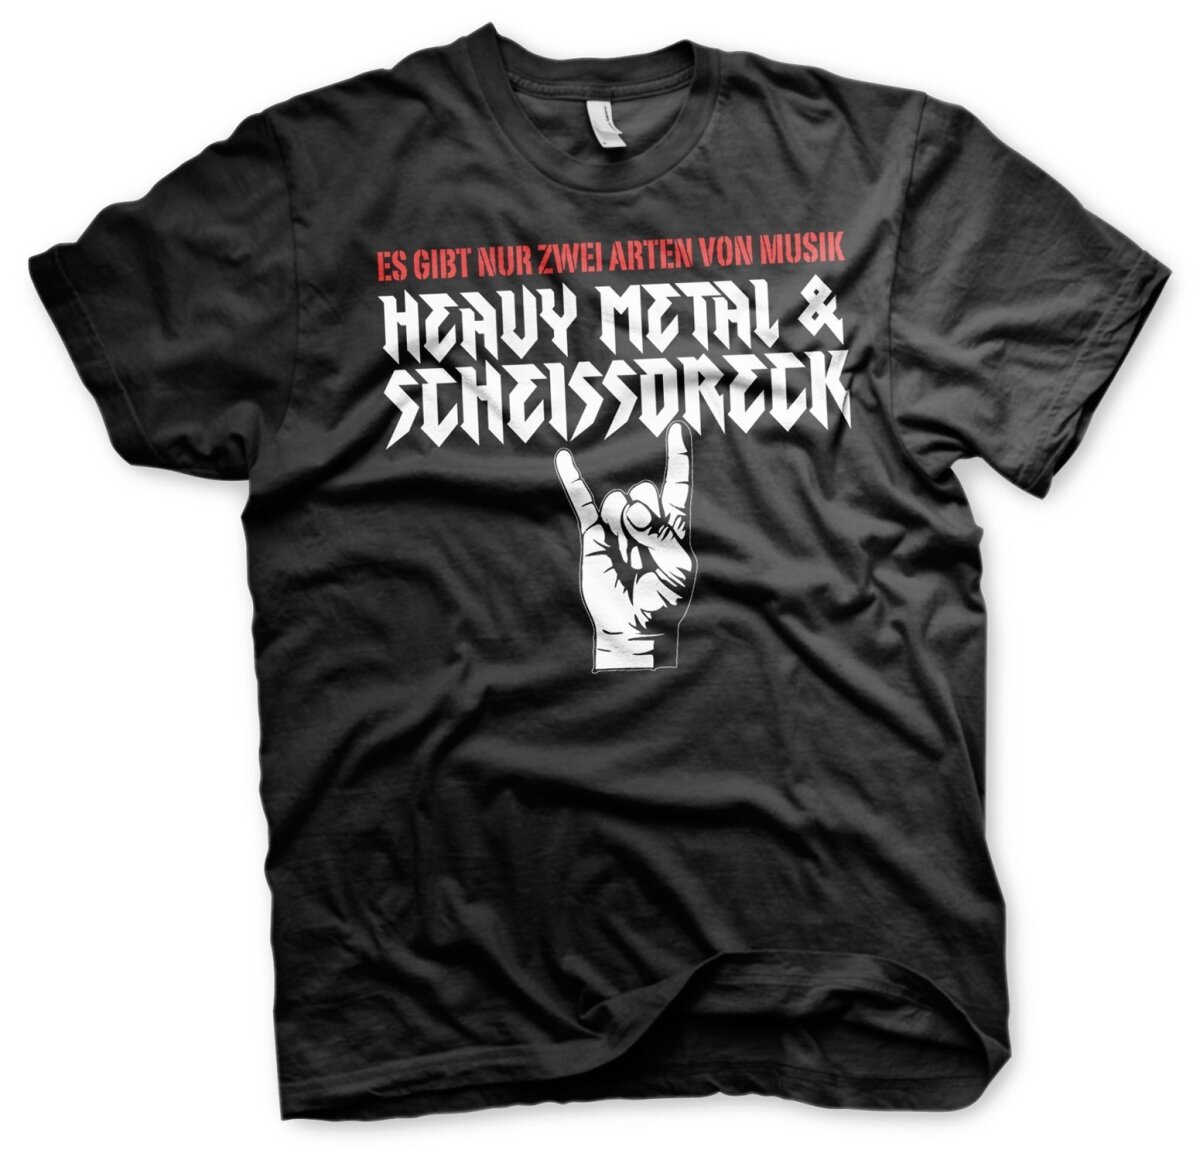 https://www.wikingerversand.de/media/image/product/12909/lg/heavy-metal-scheissdreck-tshirt-rock-biker-rocker_8.jpg